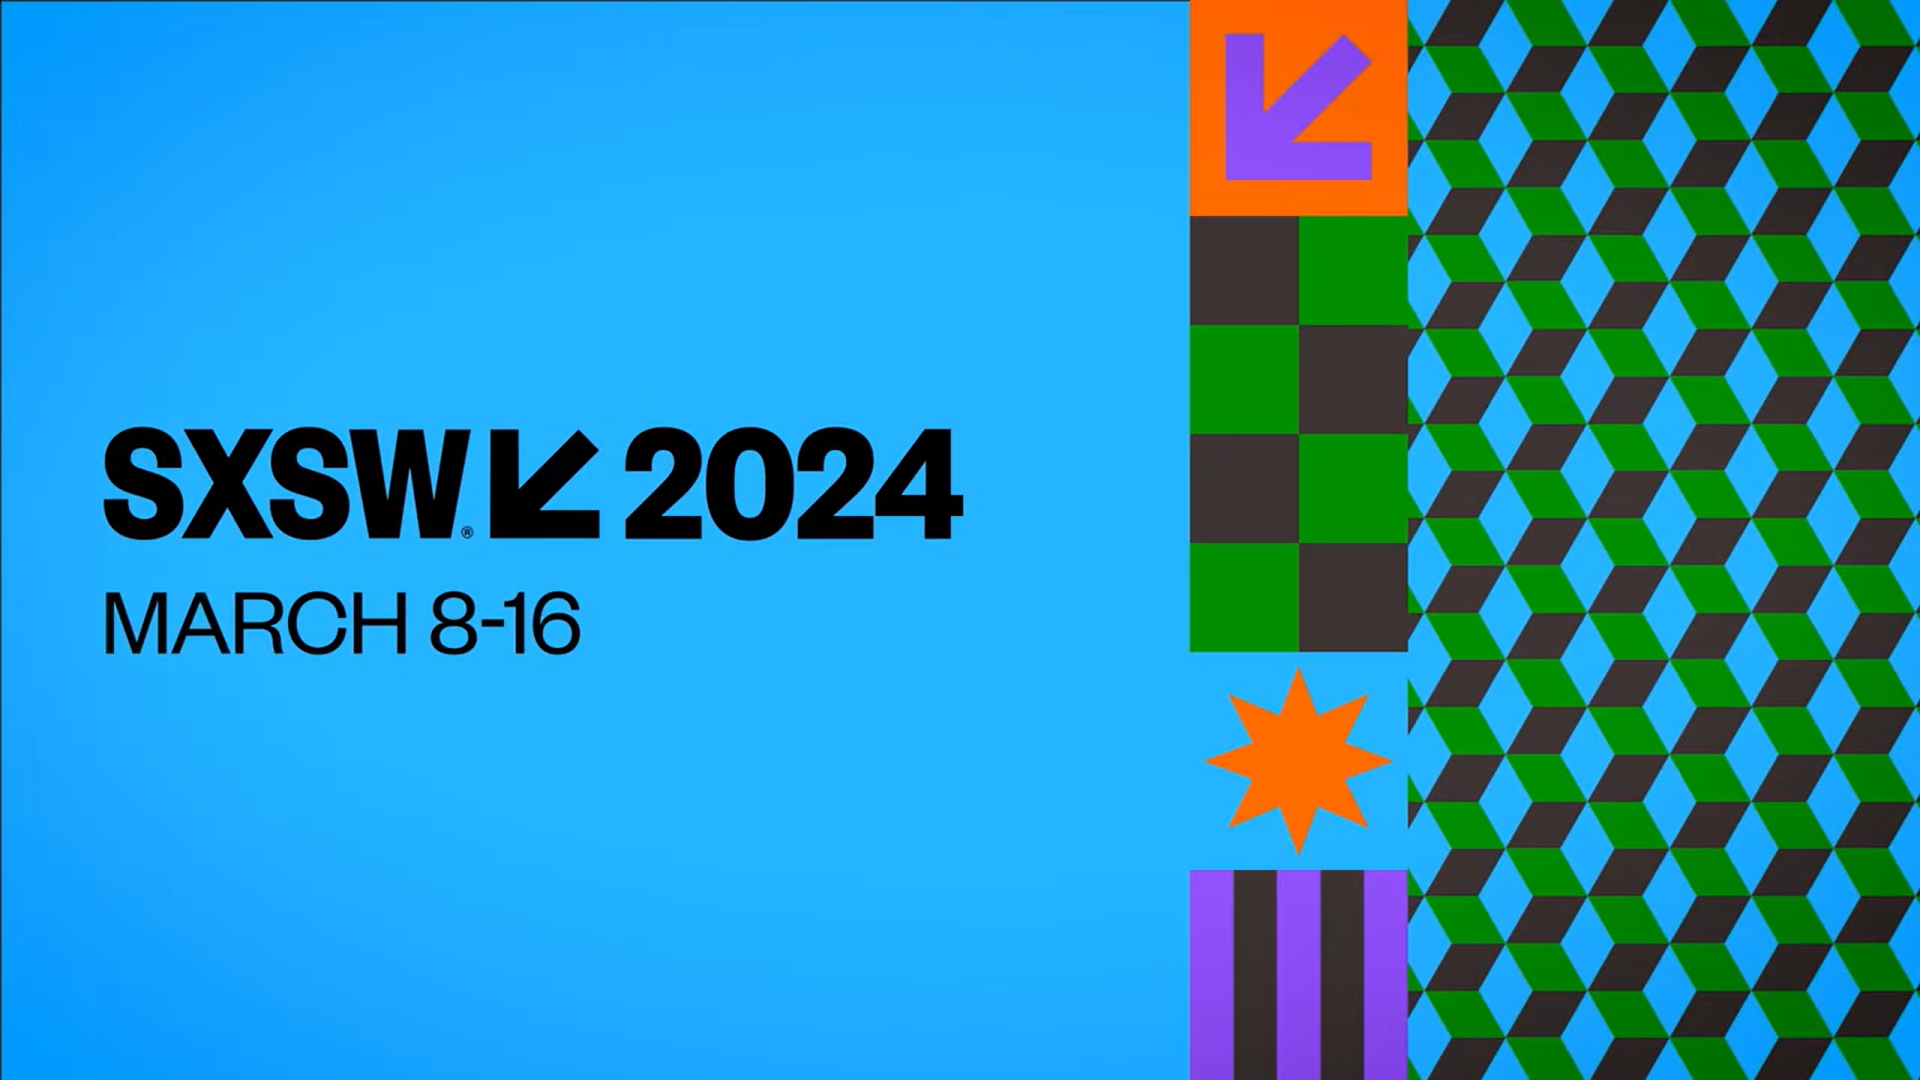 SXSW 2024 Schedule